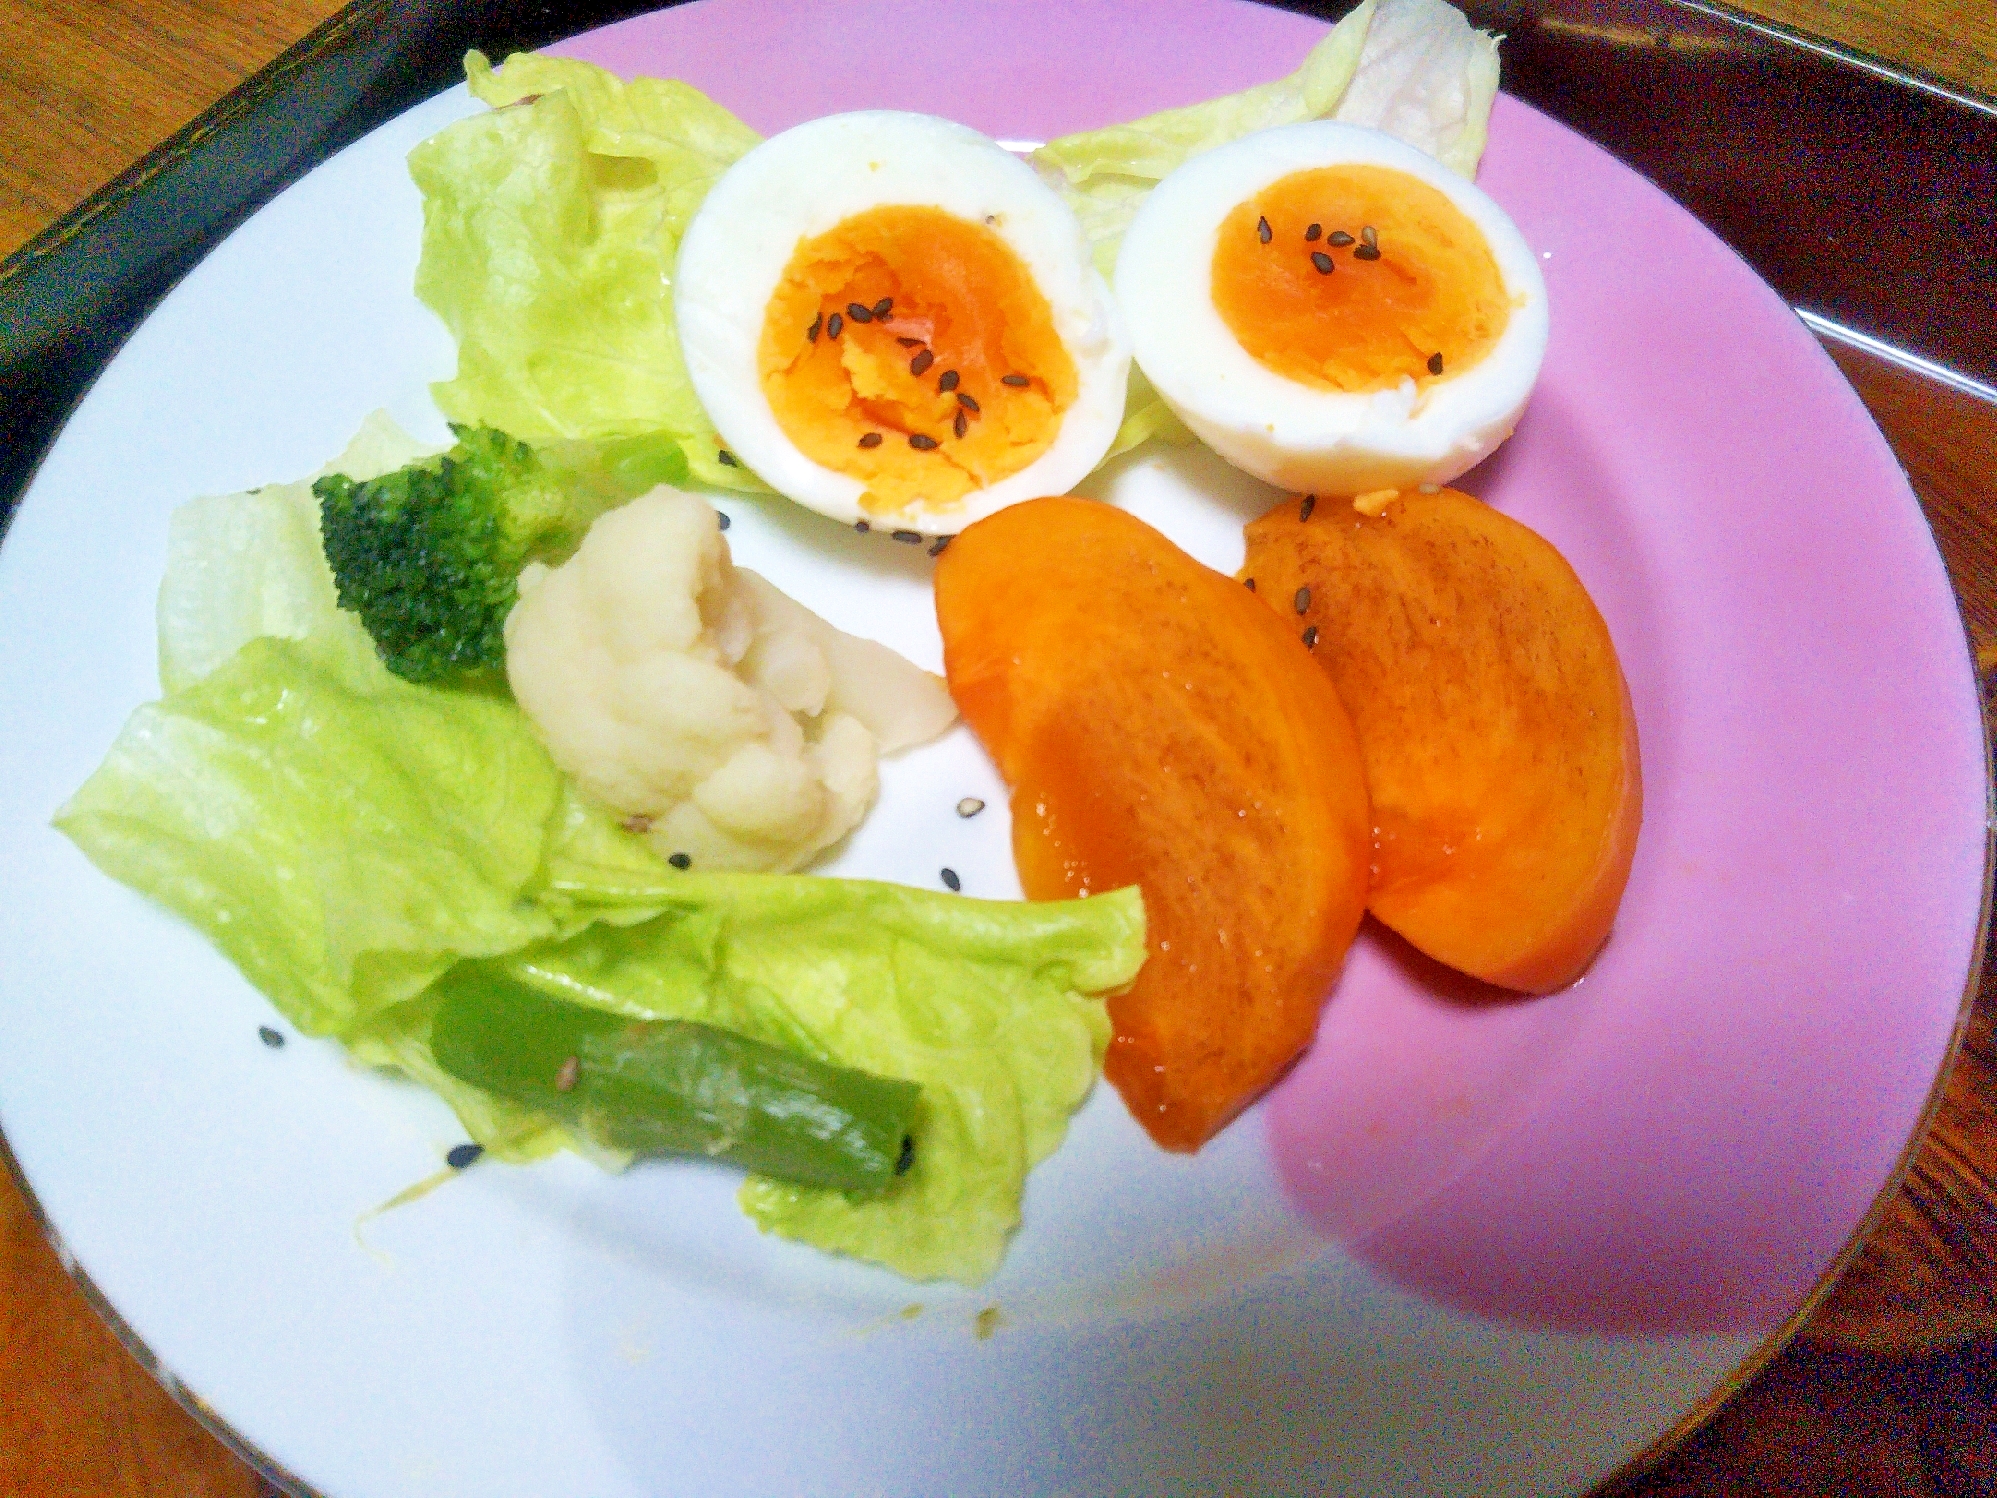 卵&柿&グリーン野菜のサラダ